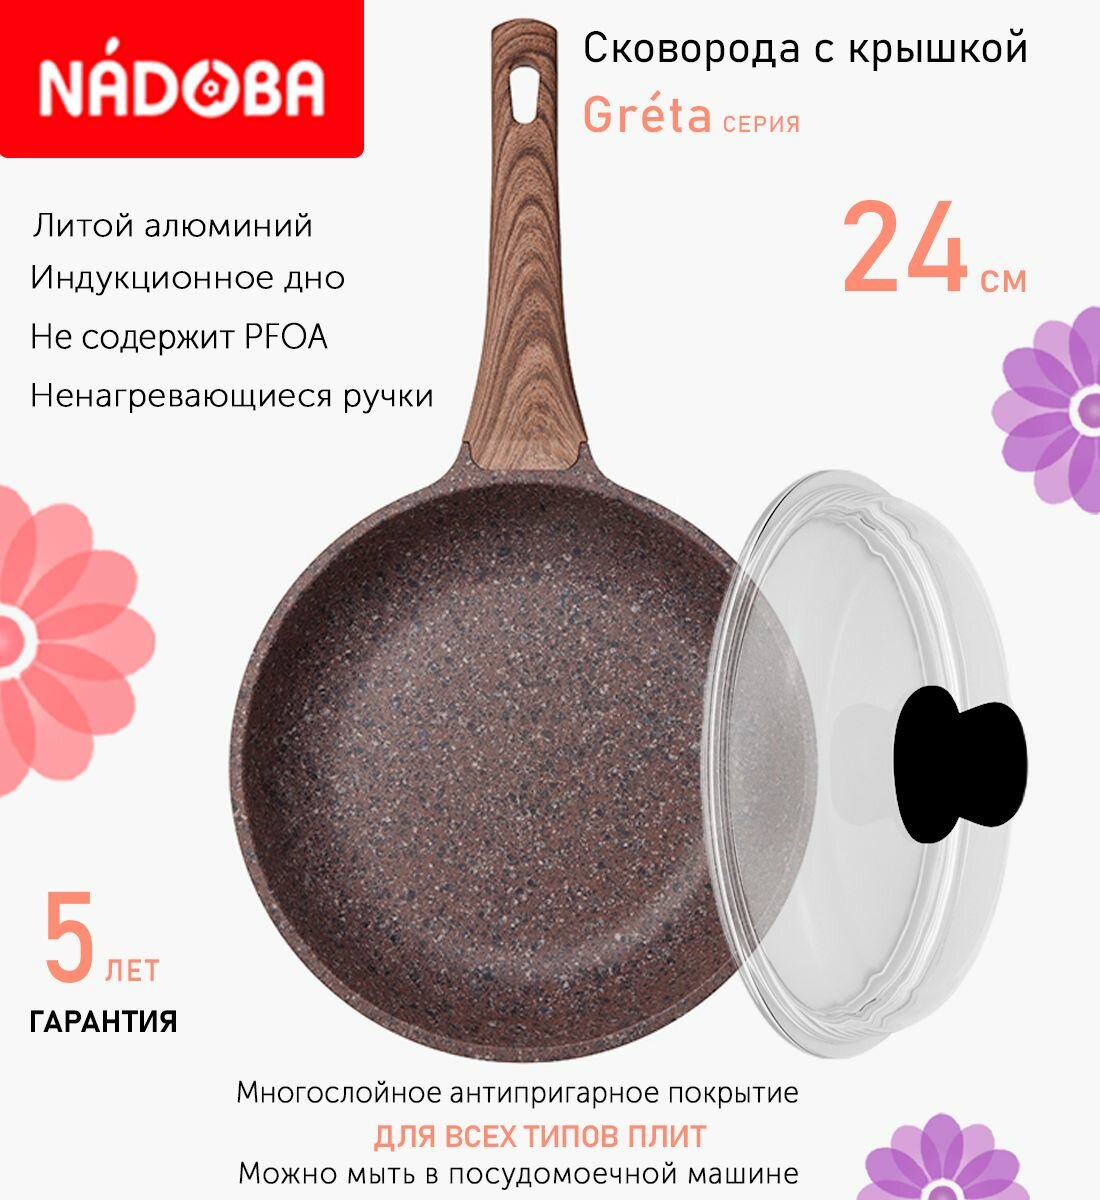 Сковорода с крышкой NADOBA 24см, серия "Greta" (арт. 728618/751113)